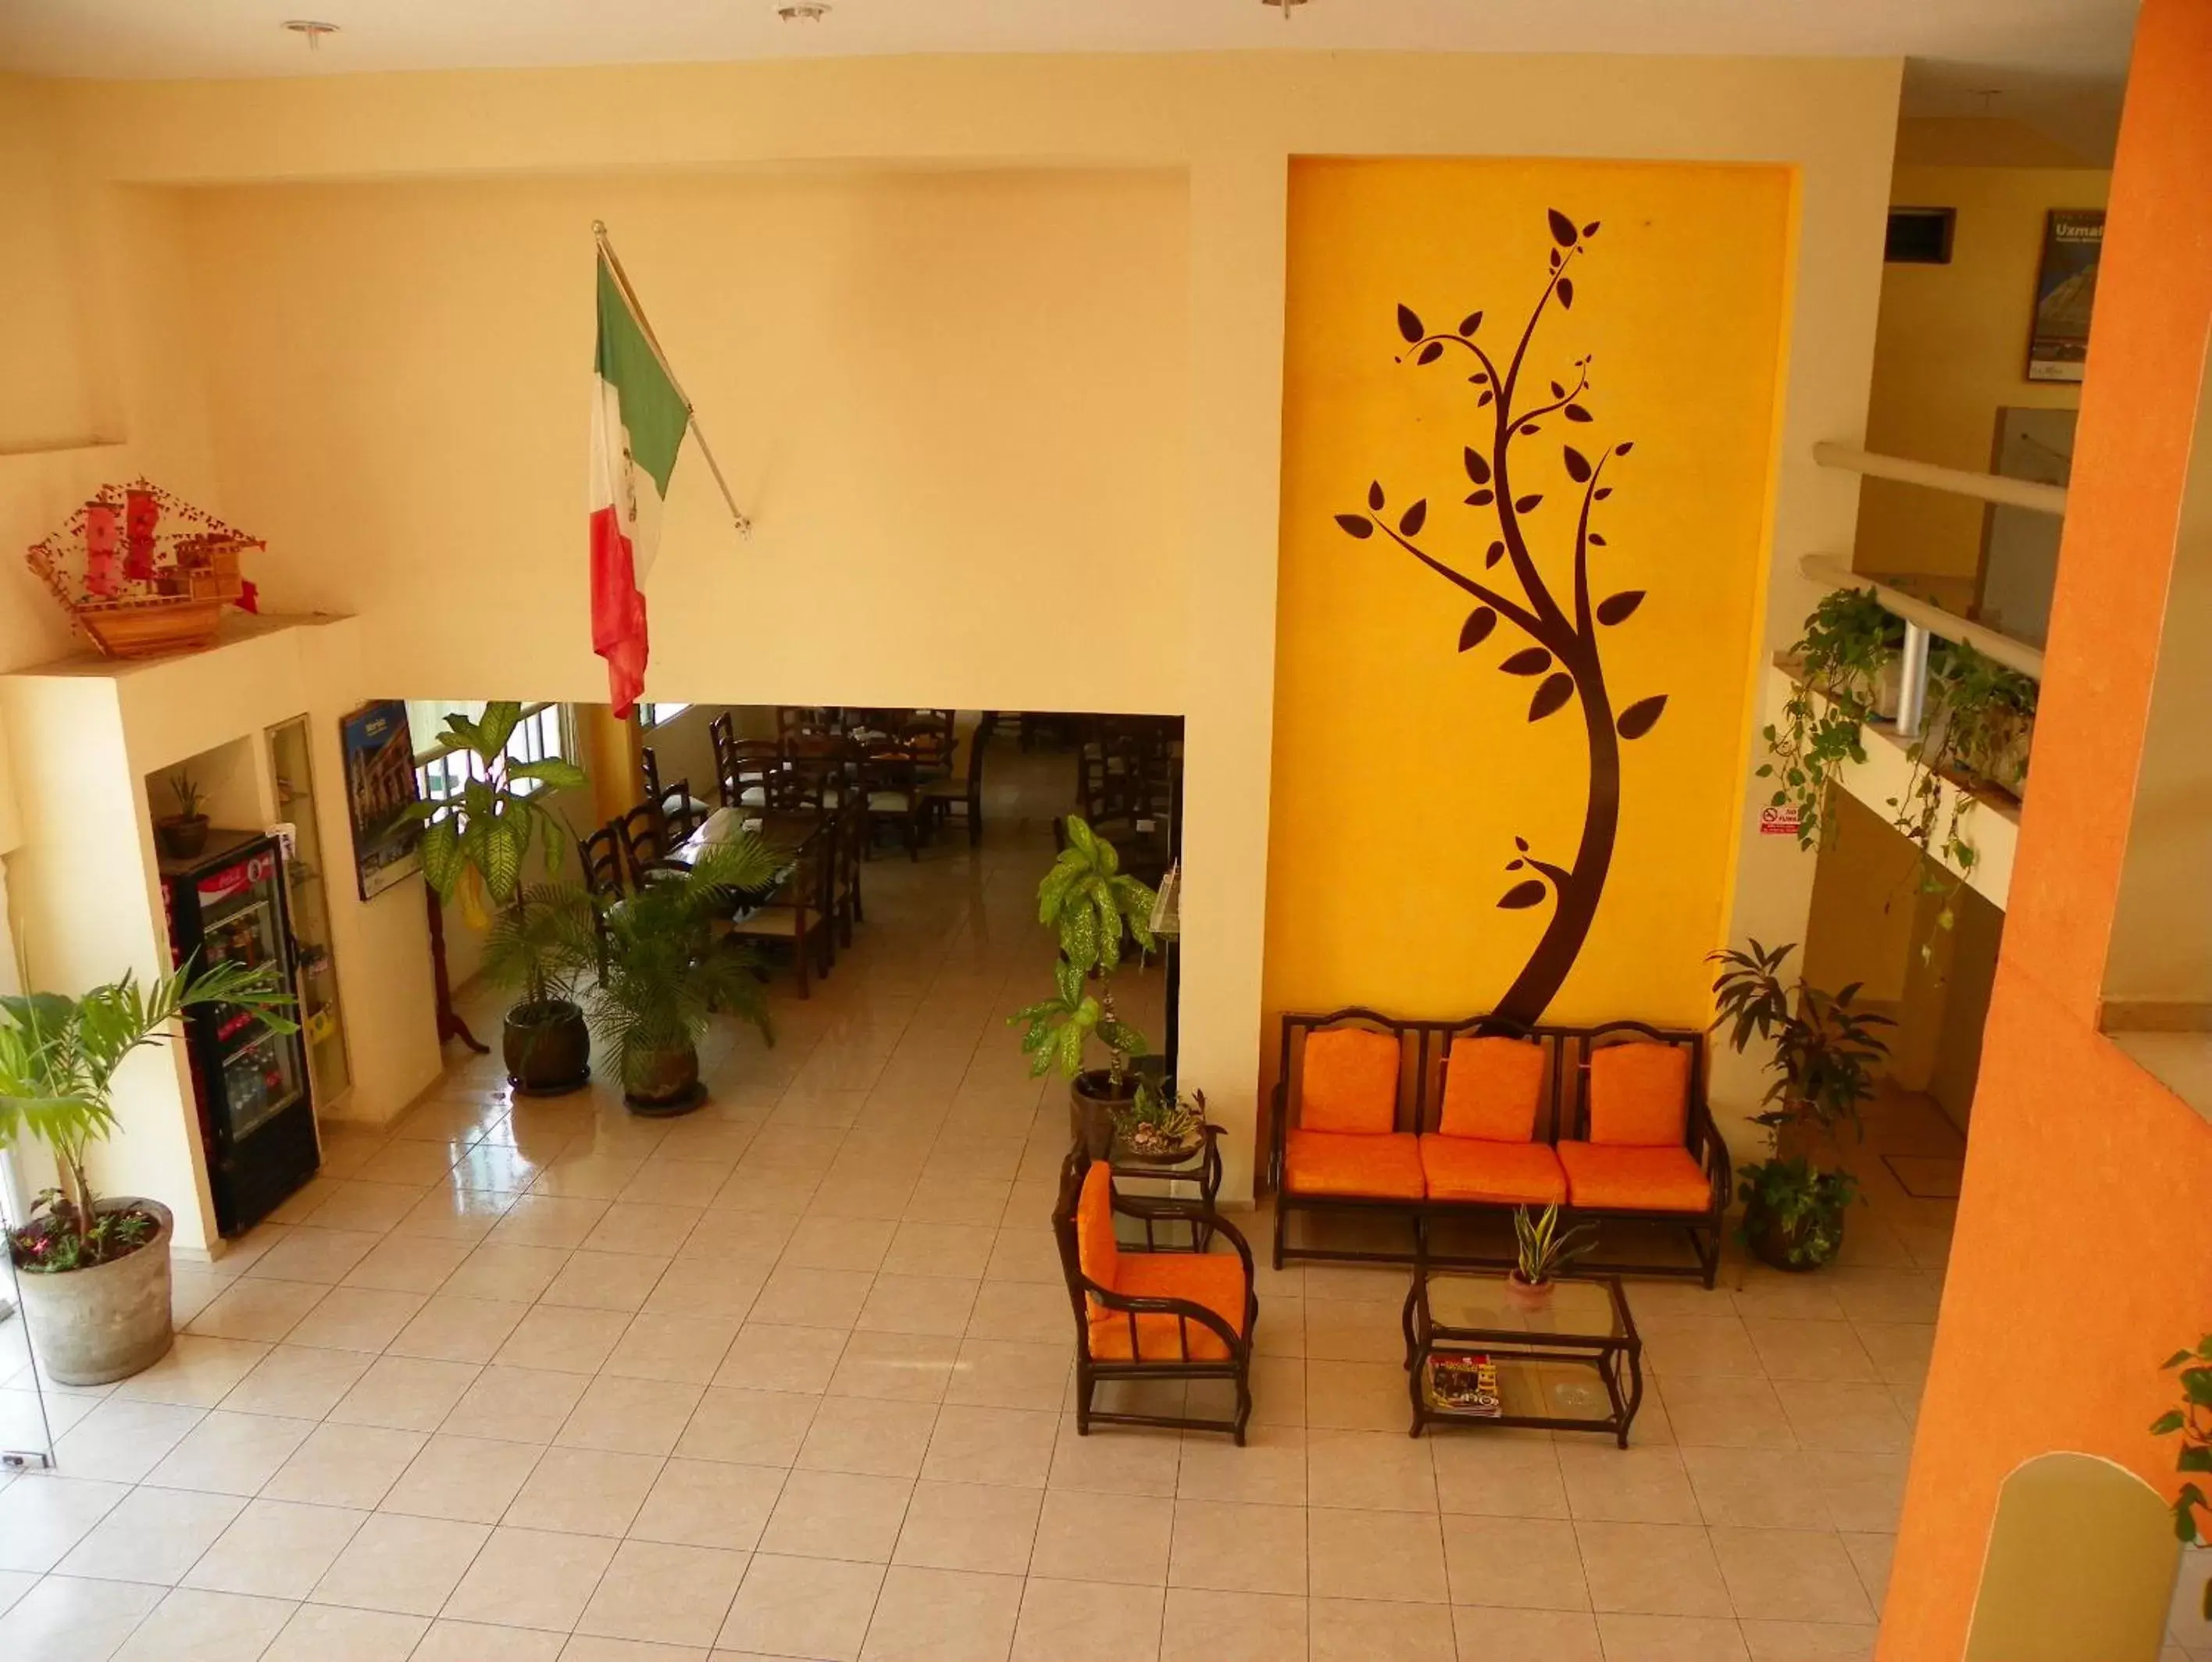 Area and facilities, Lobby/Reception in Hotel El Marques